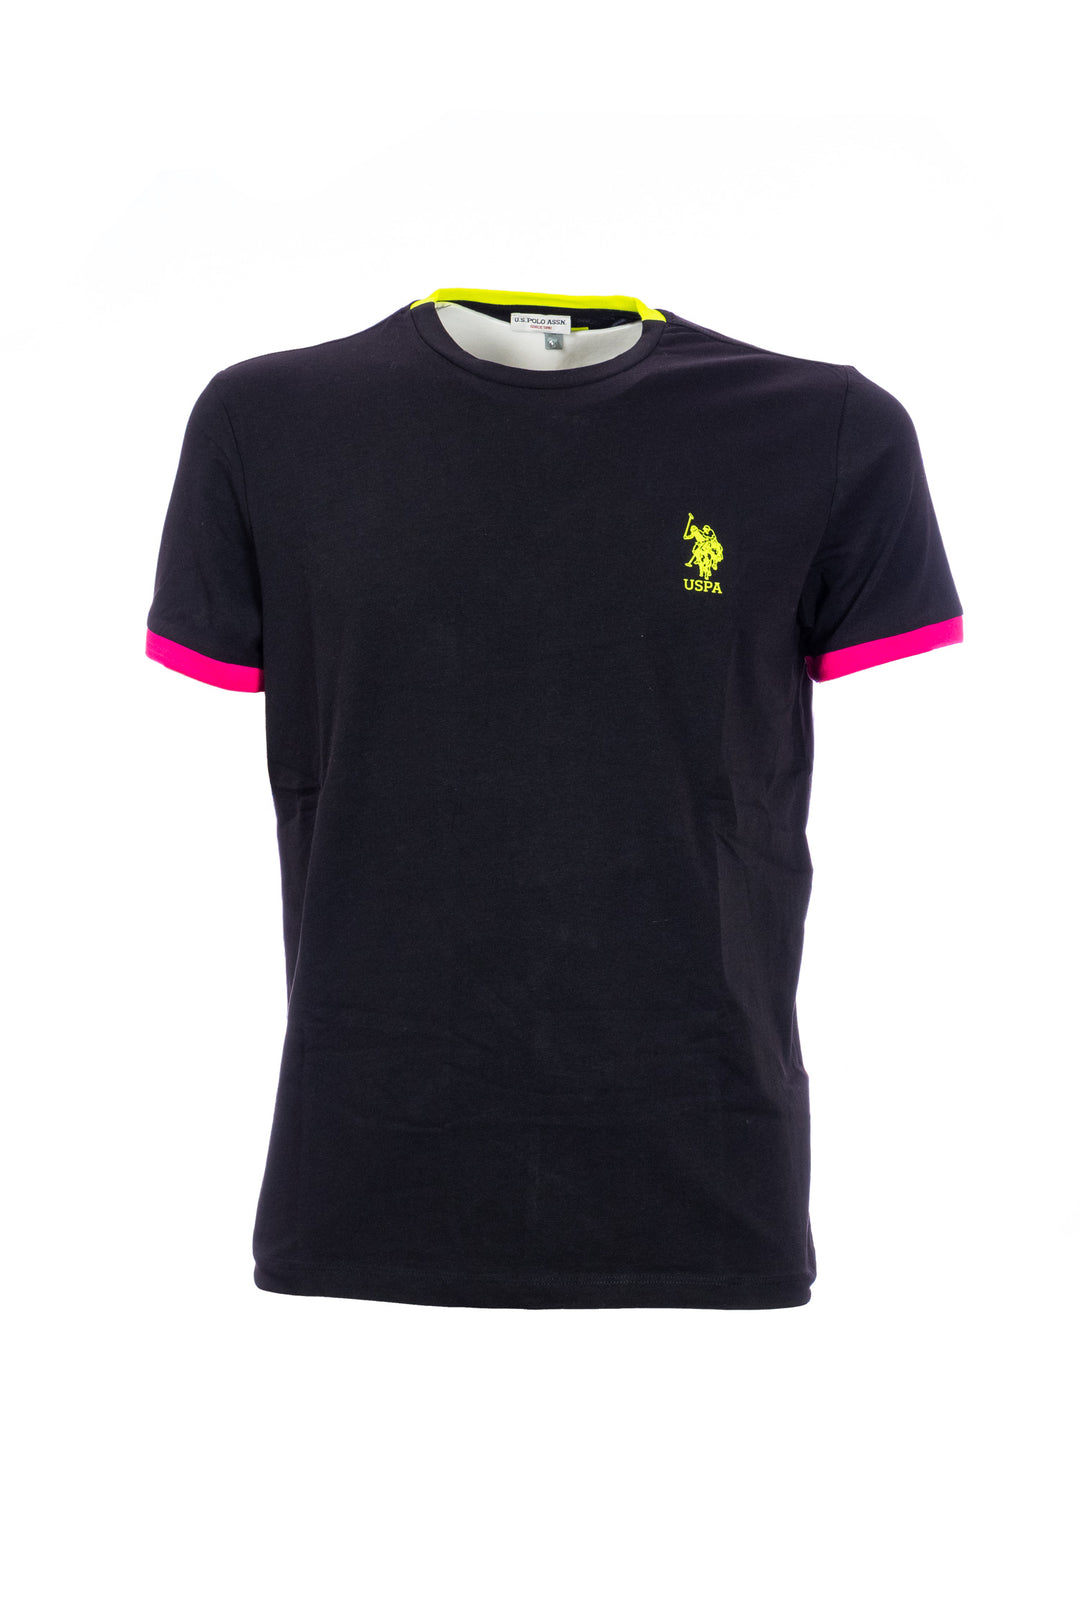 U.S. POLO ASSN. T-shirt nera in cotone stretch con logo ricamato e dettagli multicolor - Mancinelli 1954